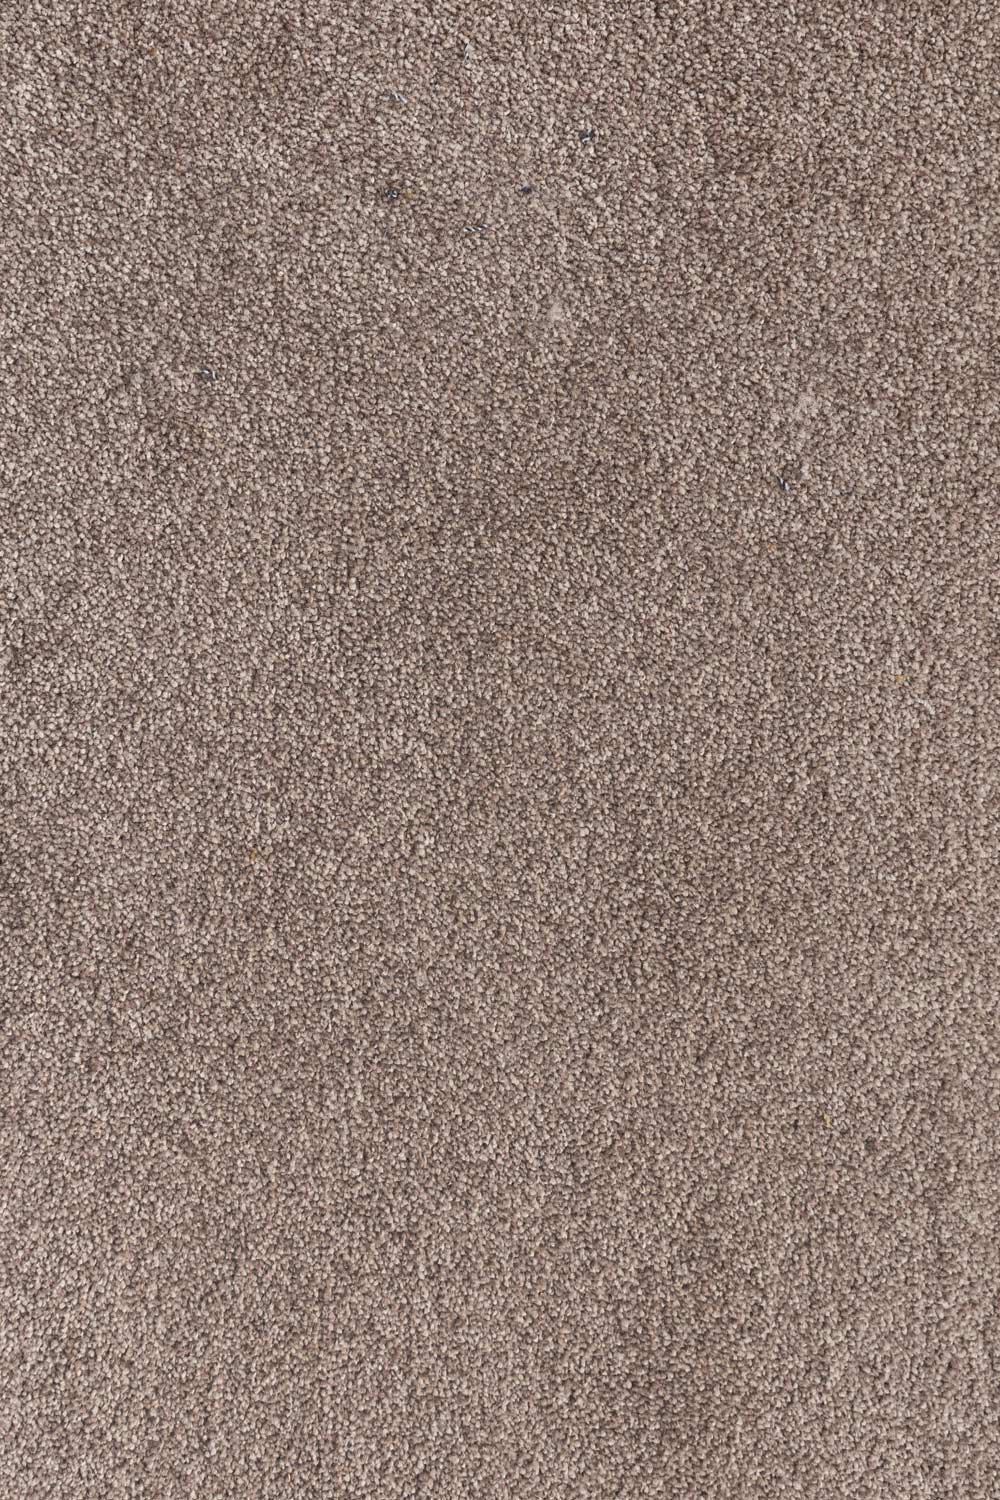 Metrážny koberec TEXAS 92 400 cm